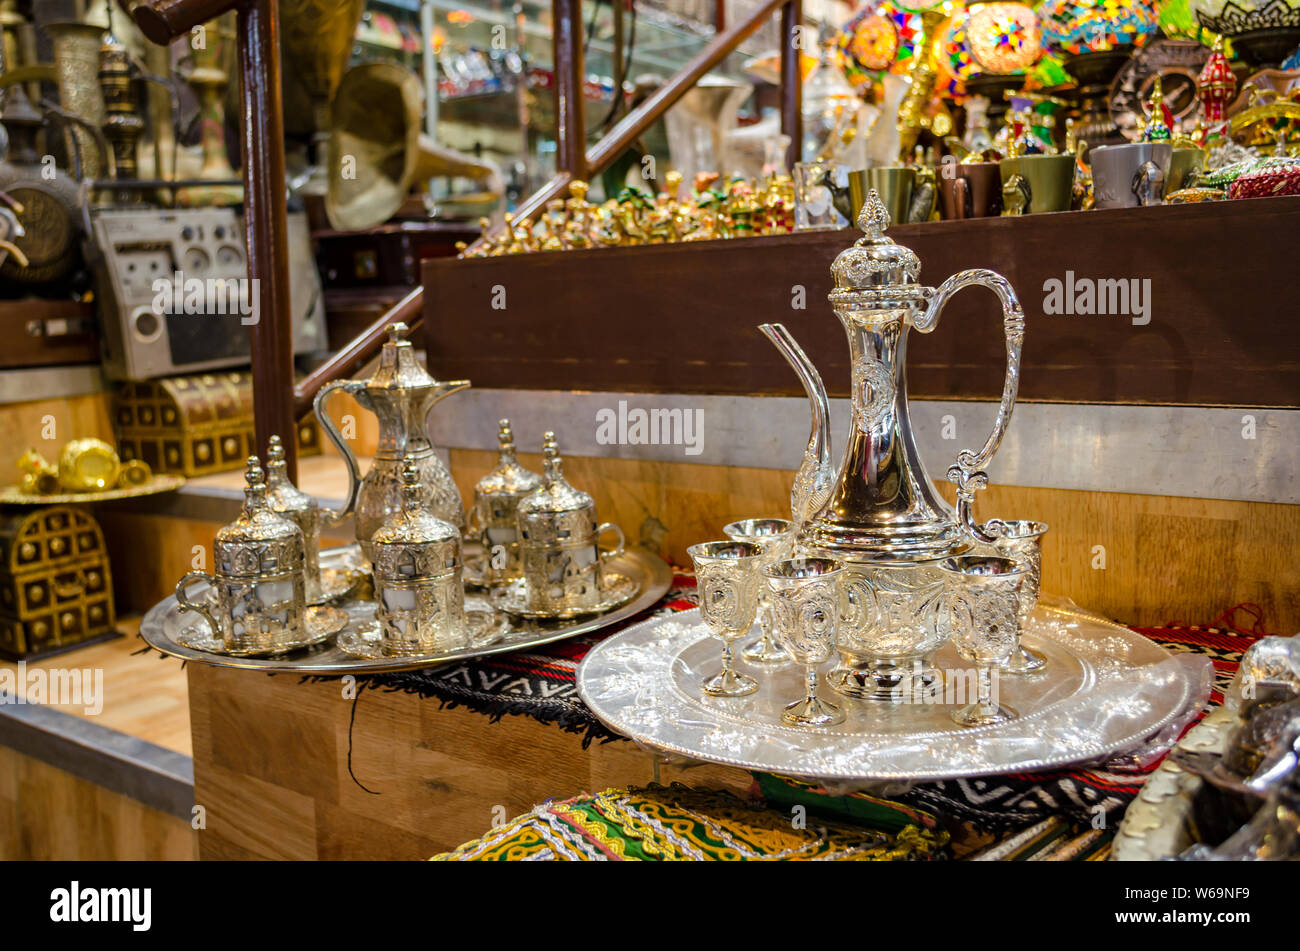 Due tipi di bella Omani caffè (kahwa) tazze caraffa e imposta sul display in un negozio di vendita al dettaglio in Muscat Oman. Foto Stock